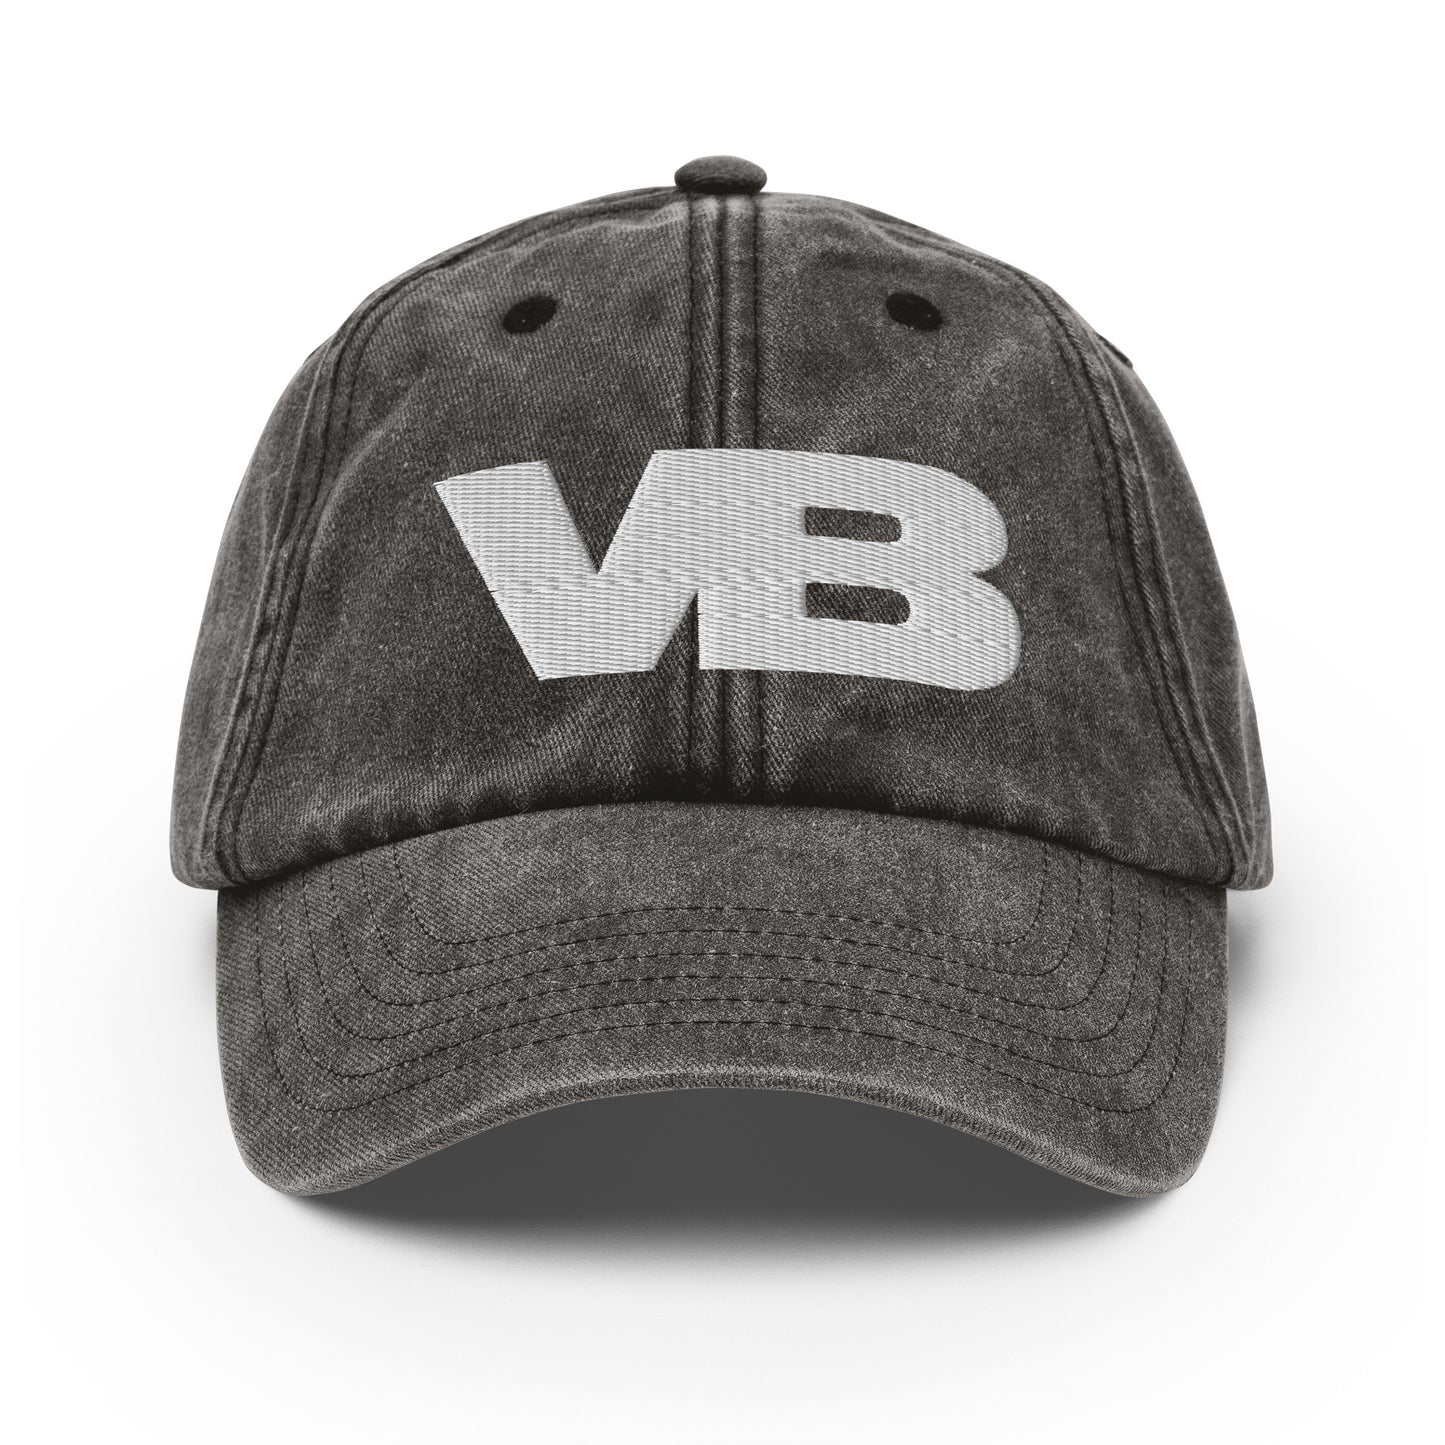 Villa Blvd Monogram Vintage Hat